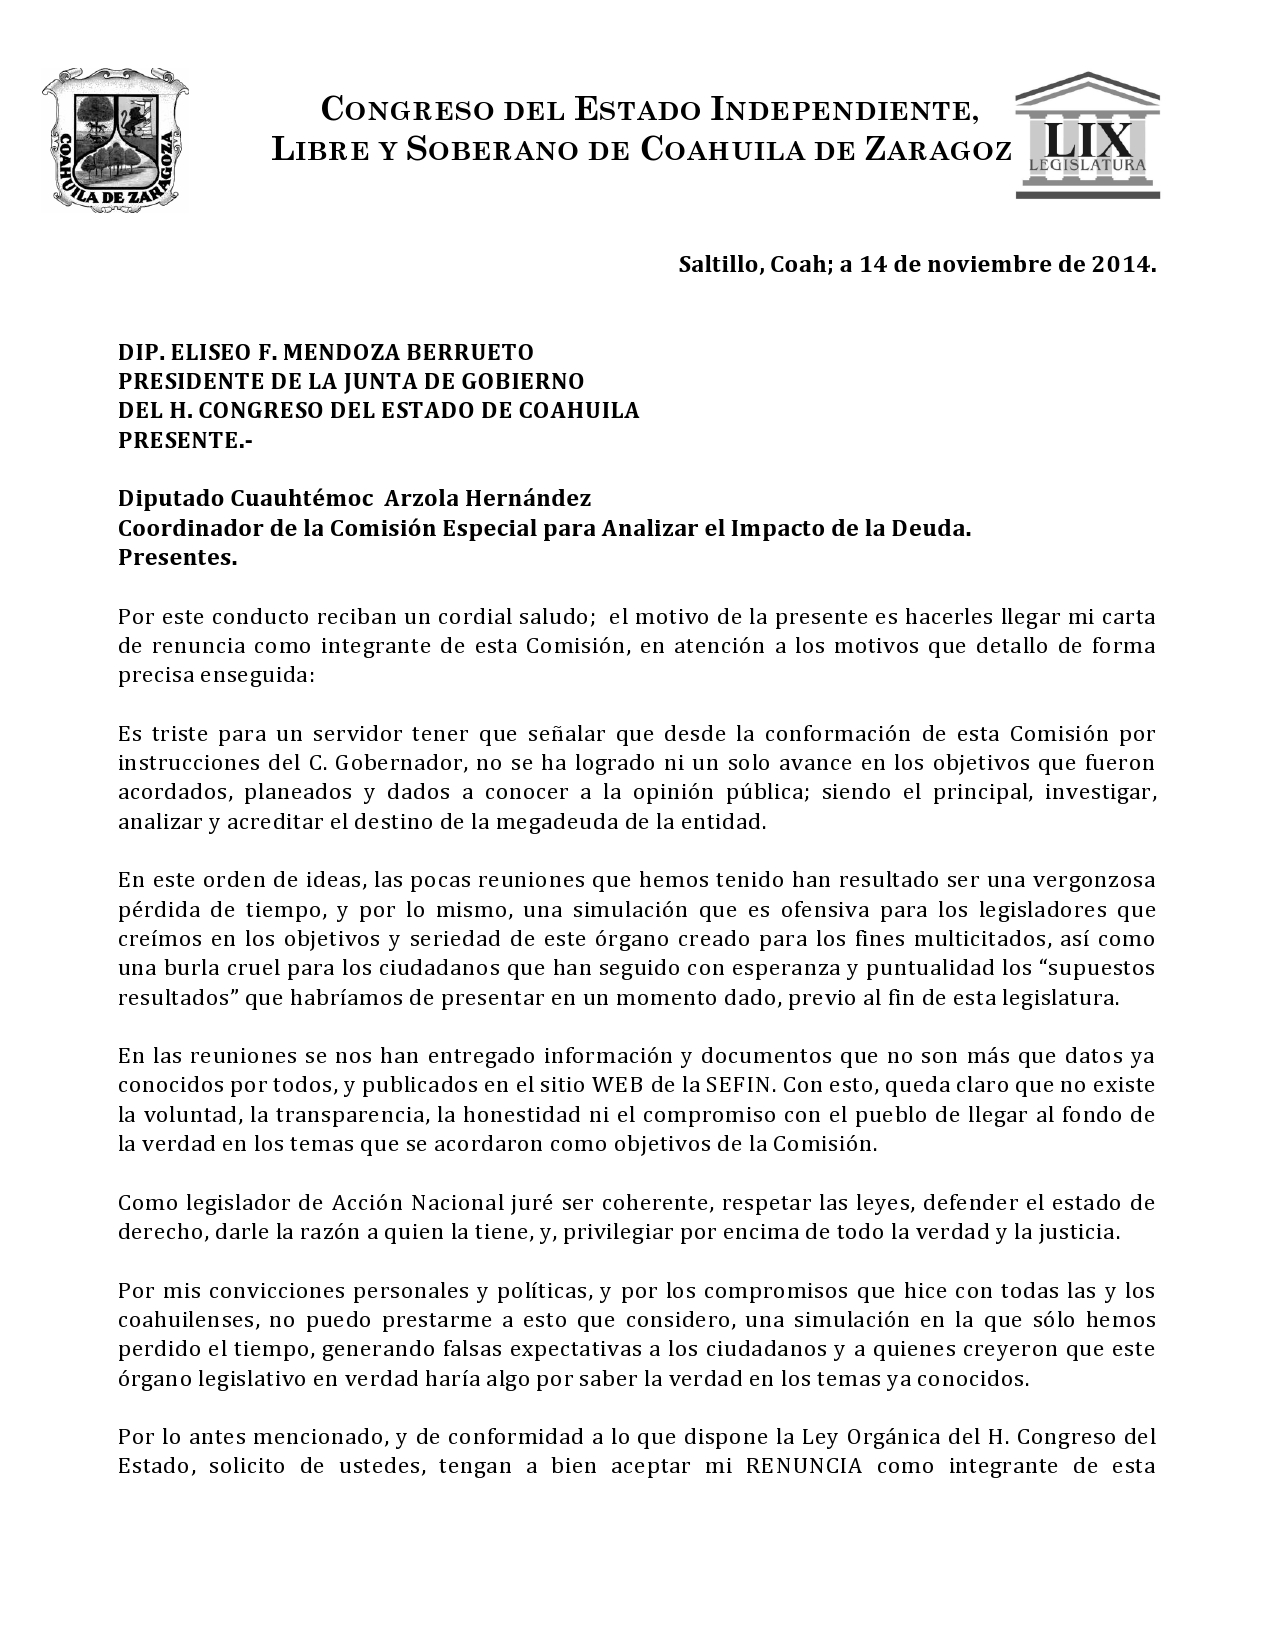 Ante la falta de resultados, presenté mi carta de renuncia a la Comisión de la Deuda #Coahuila